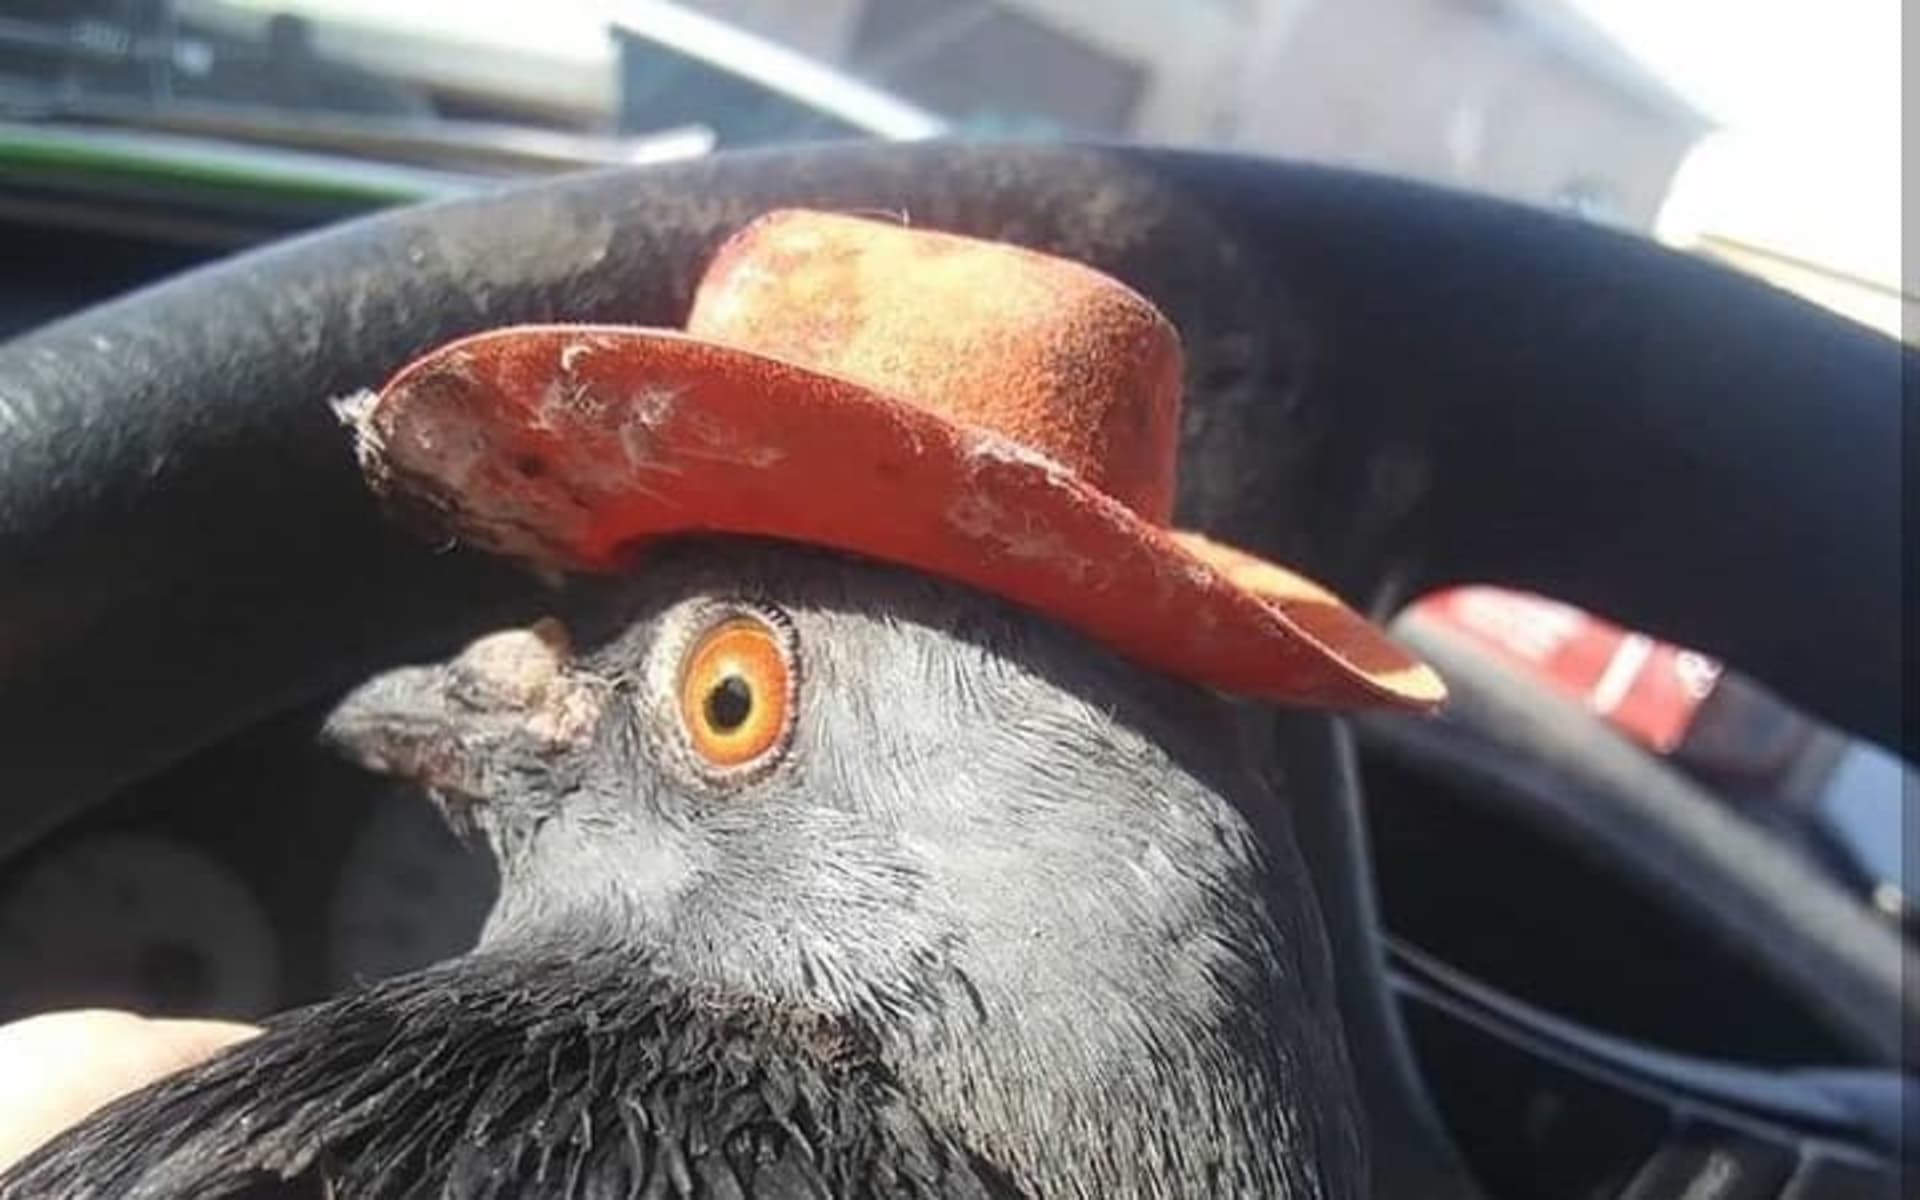 Billie the Pidge je jedním ze tří holubů, kteří se v prosinci objevili s přilepenými kovbojskými klobouky. Navzdory snaze záchranářů však zemřela. Credit: Lofty Hopes